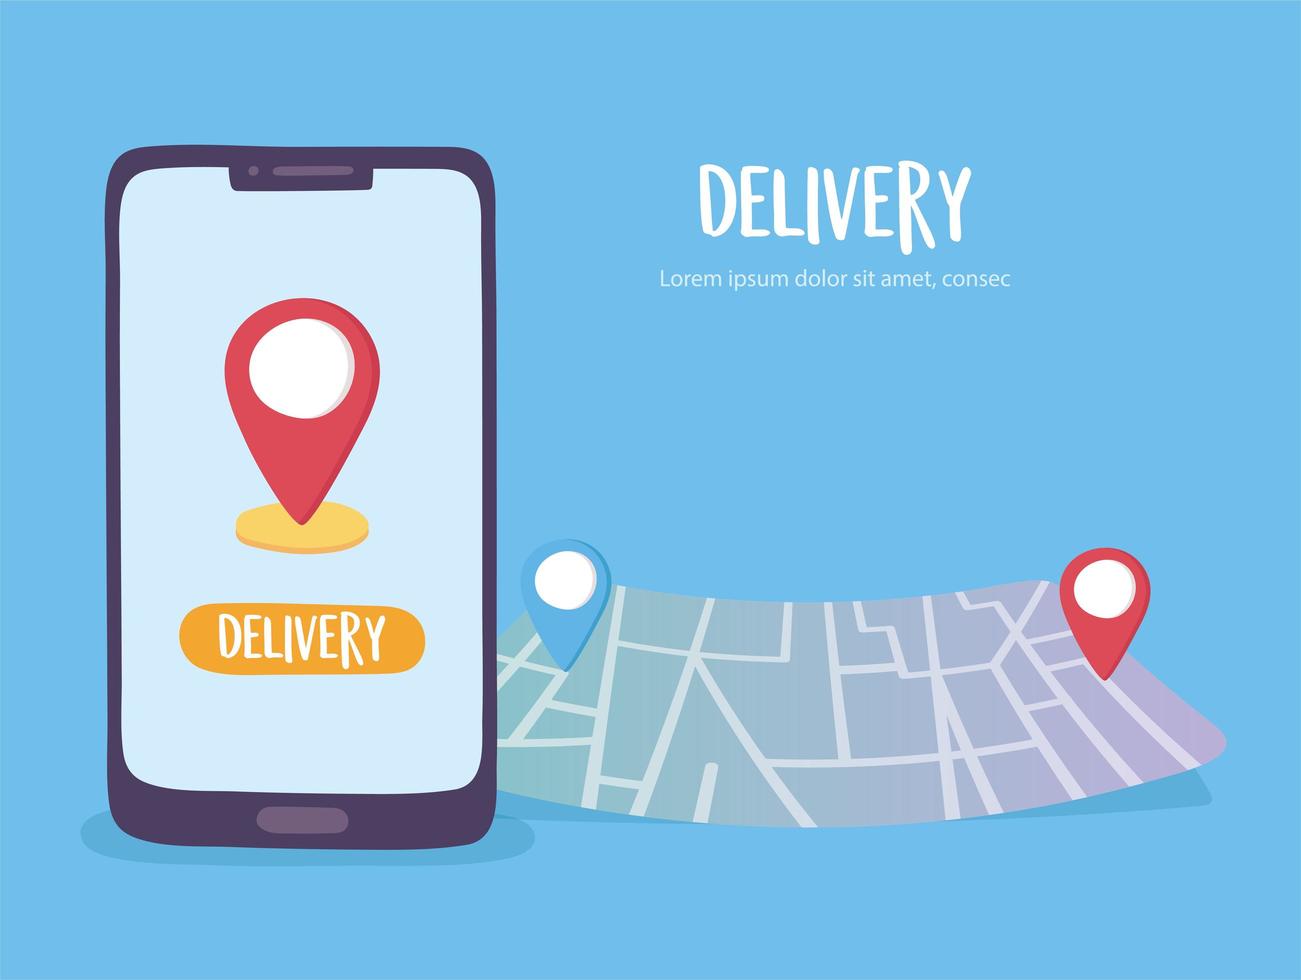 servicio de entrega en línea, seguimiento de teléfonos inteligentes en la navegación del mapa, transporte rápido y gratuito, envío de pedidos, sitio web de la aplicación vector